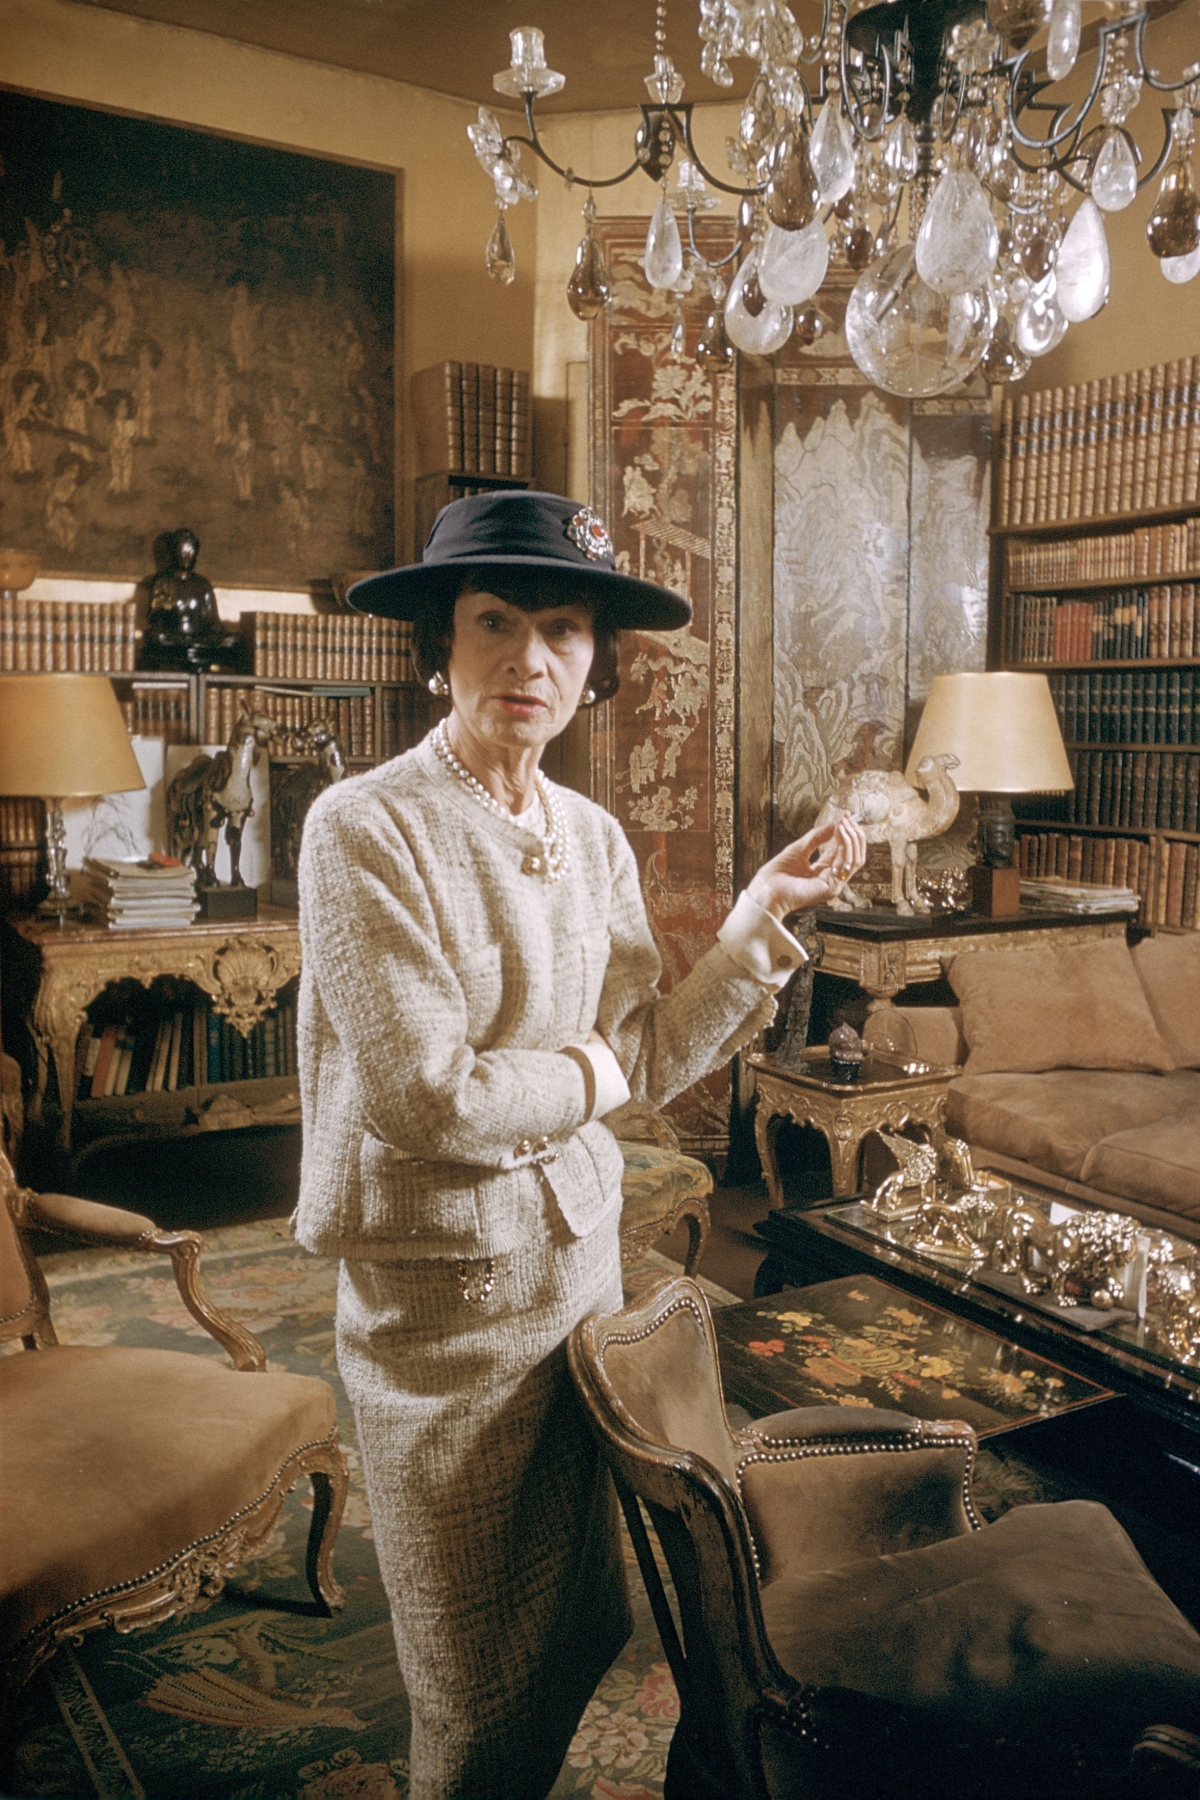 Nhà mốt huyền thoại Coco Chanel Chặng đường thời trang và những ngày tháng  cuối đời